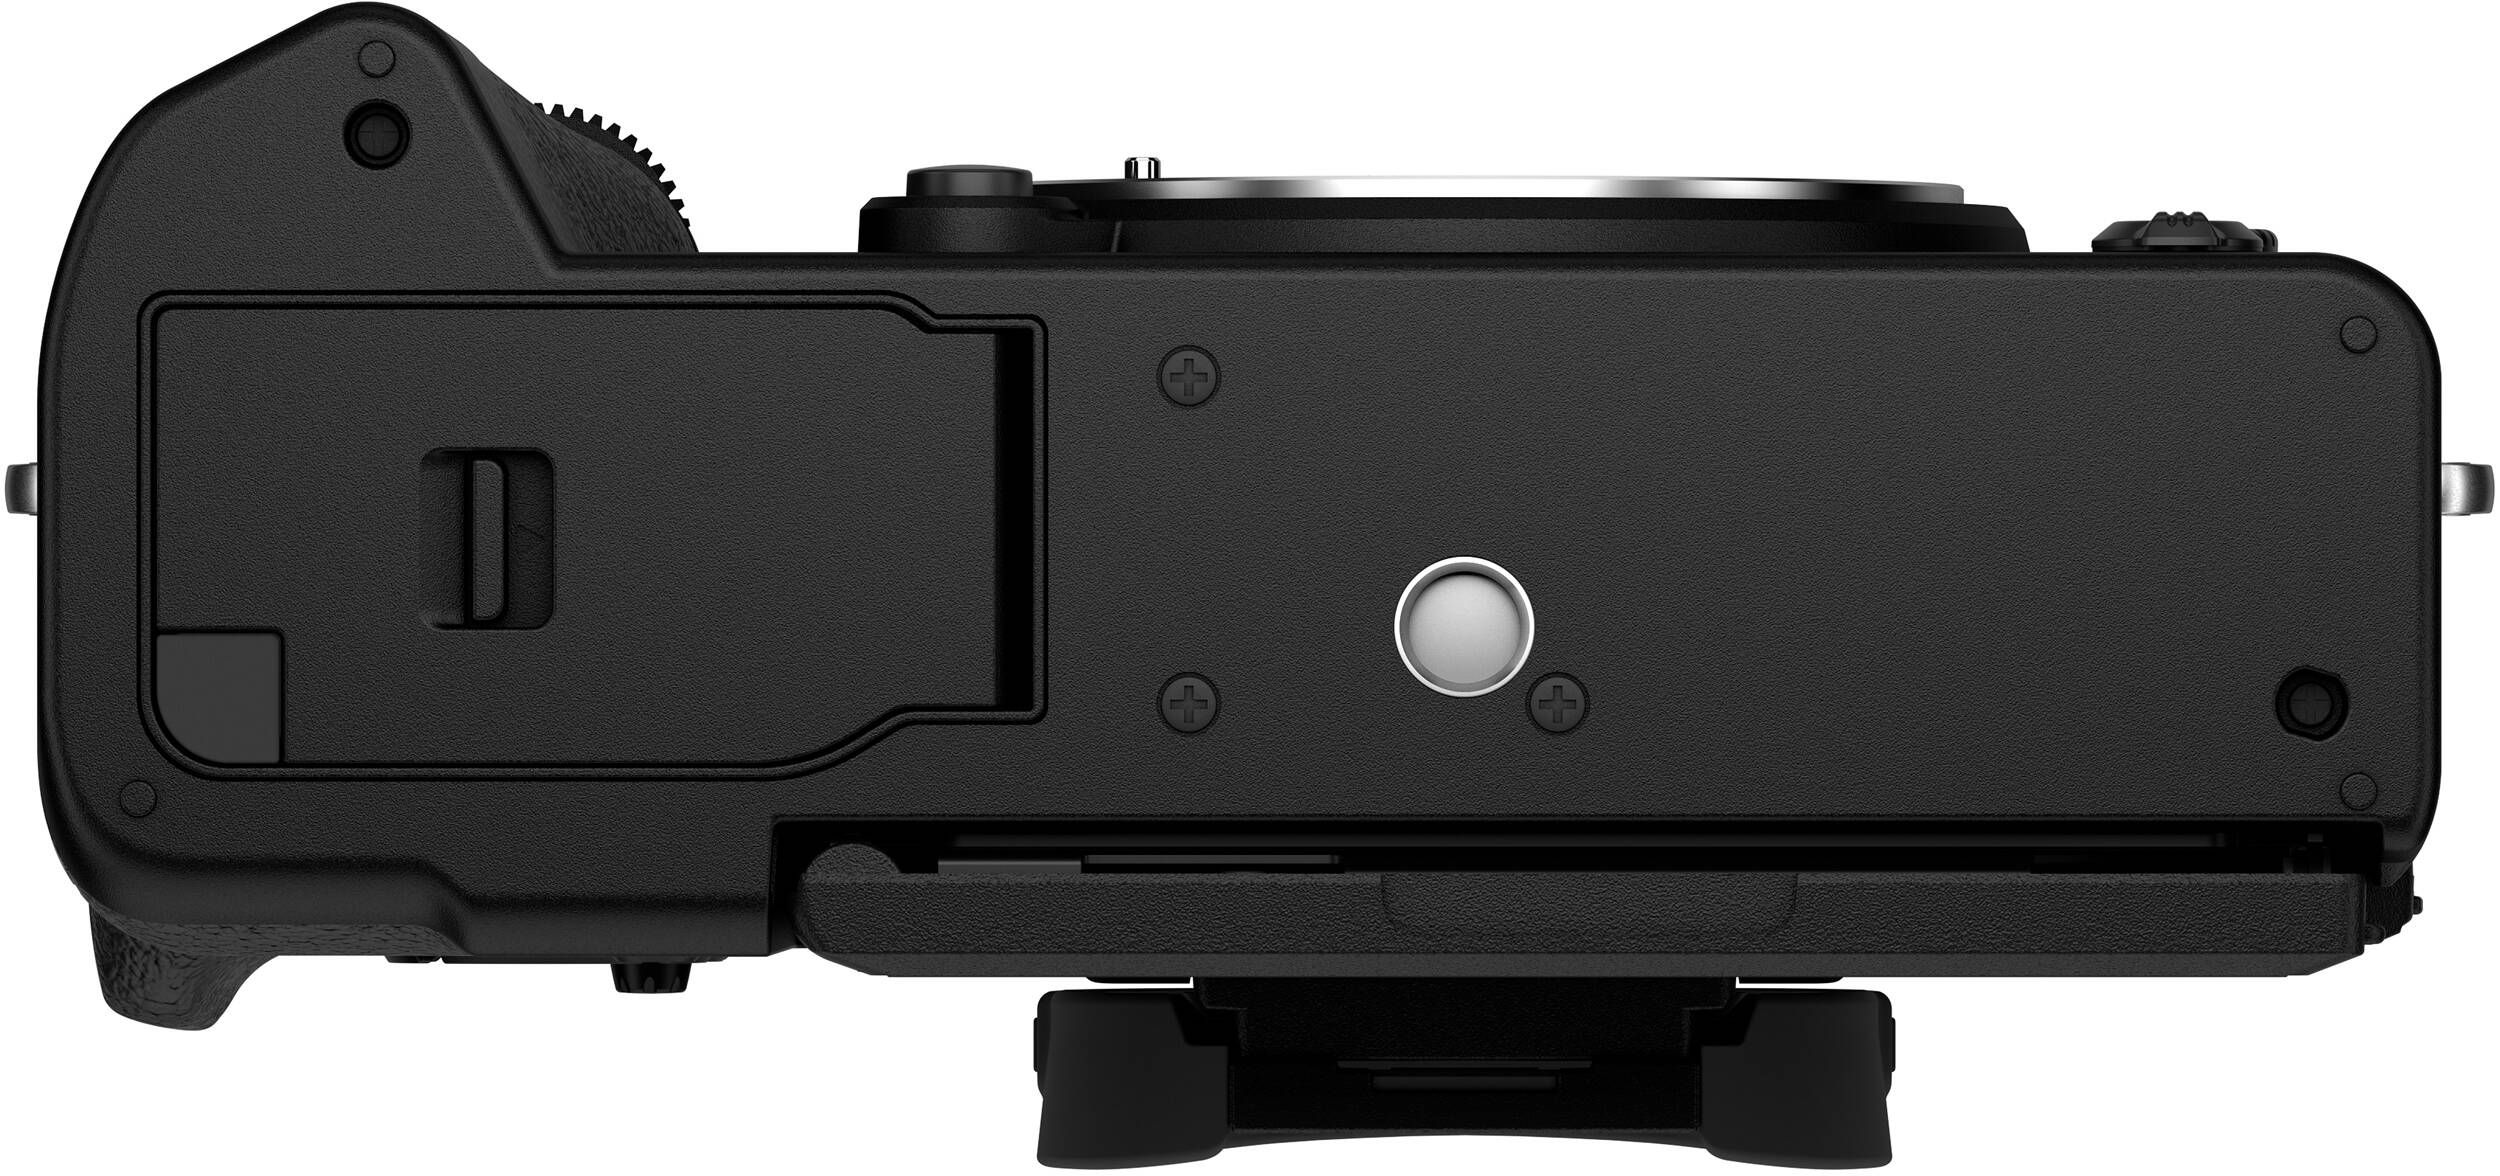 Фотоаппарат FUJIFILM X-T5 + XF 16-50mm F2.8-4.8R LM WR Black (16842565) фото 10